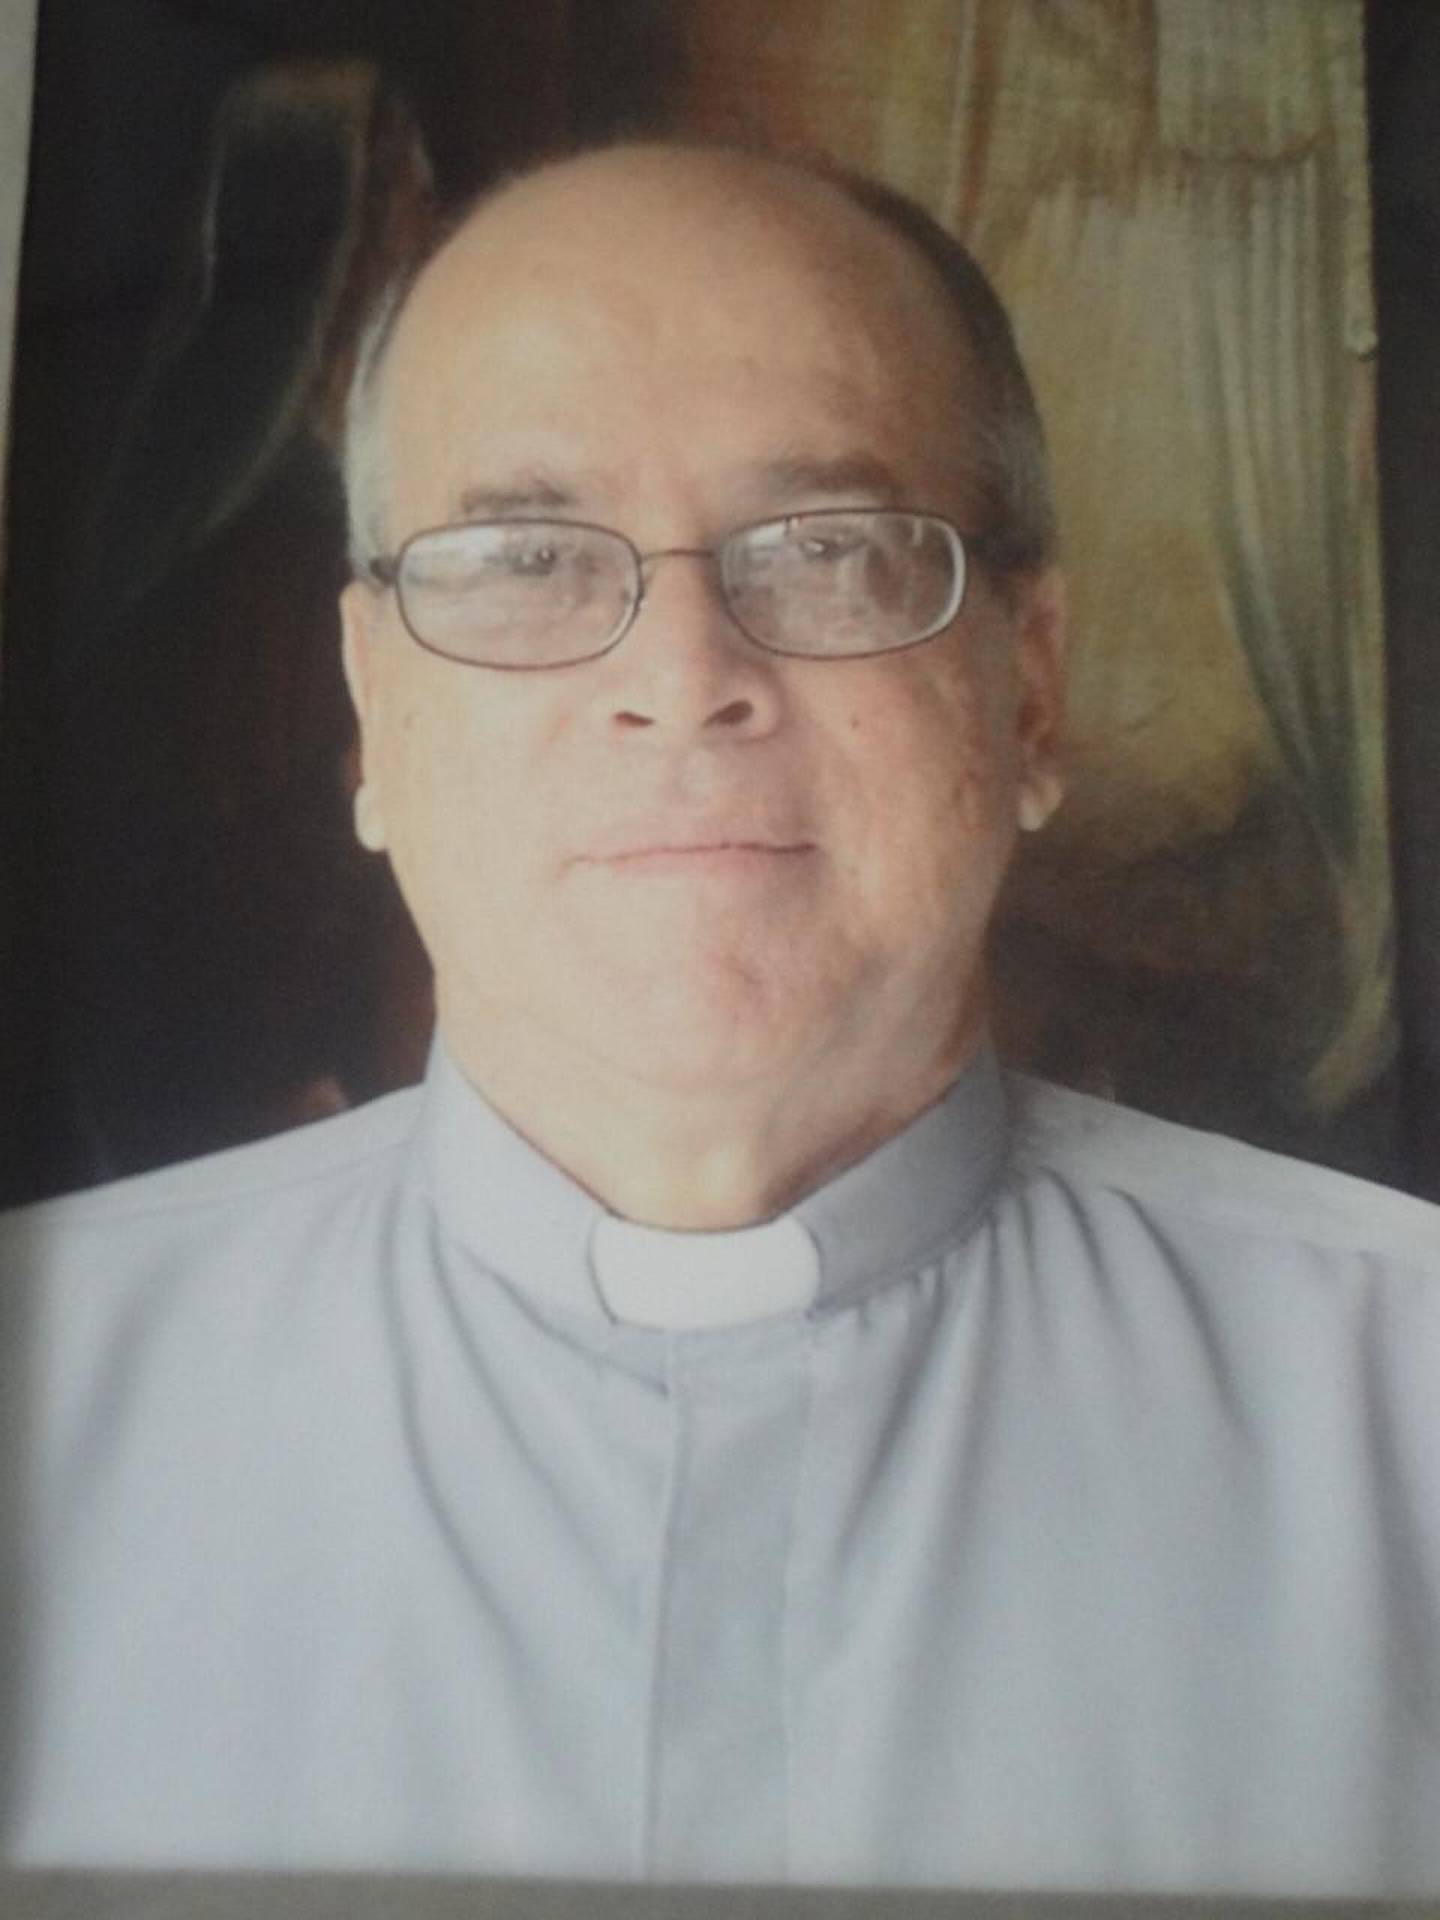 El sacerdote Juan Bautista Bolaños Rojas, de 78 años, falleció de forma trágica al ser atropellado por un carro cuando intentaba cruzar una transitada carretera. Foto cortesía.